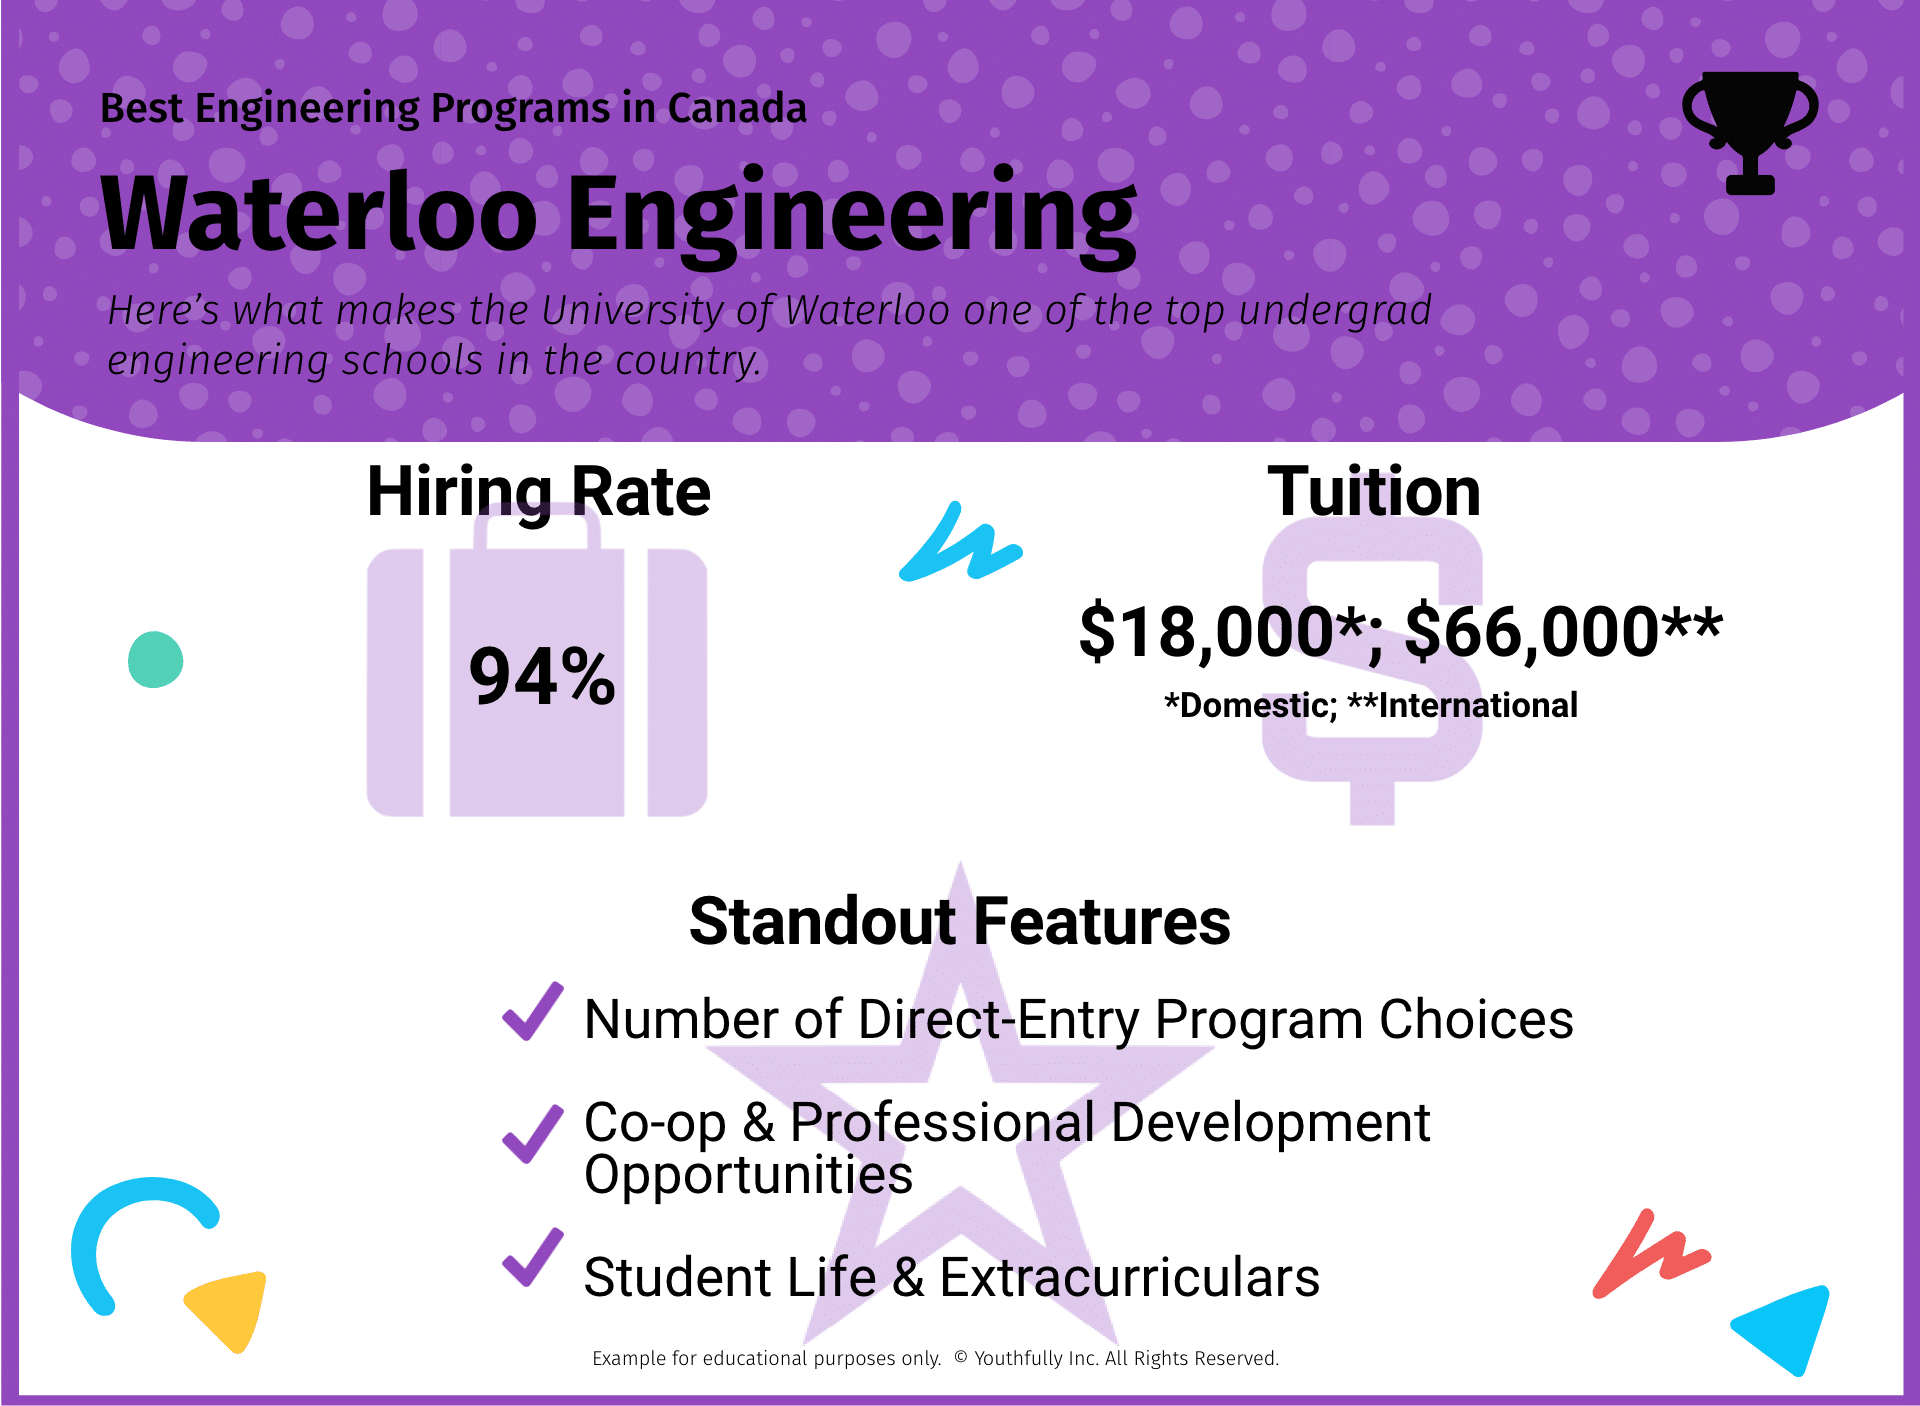 best engineering schools in canada best universities in canada for engineering undergraduate programs best engineering programs in canada waterloo engineering